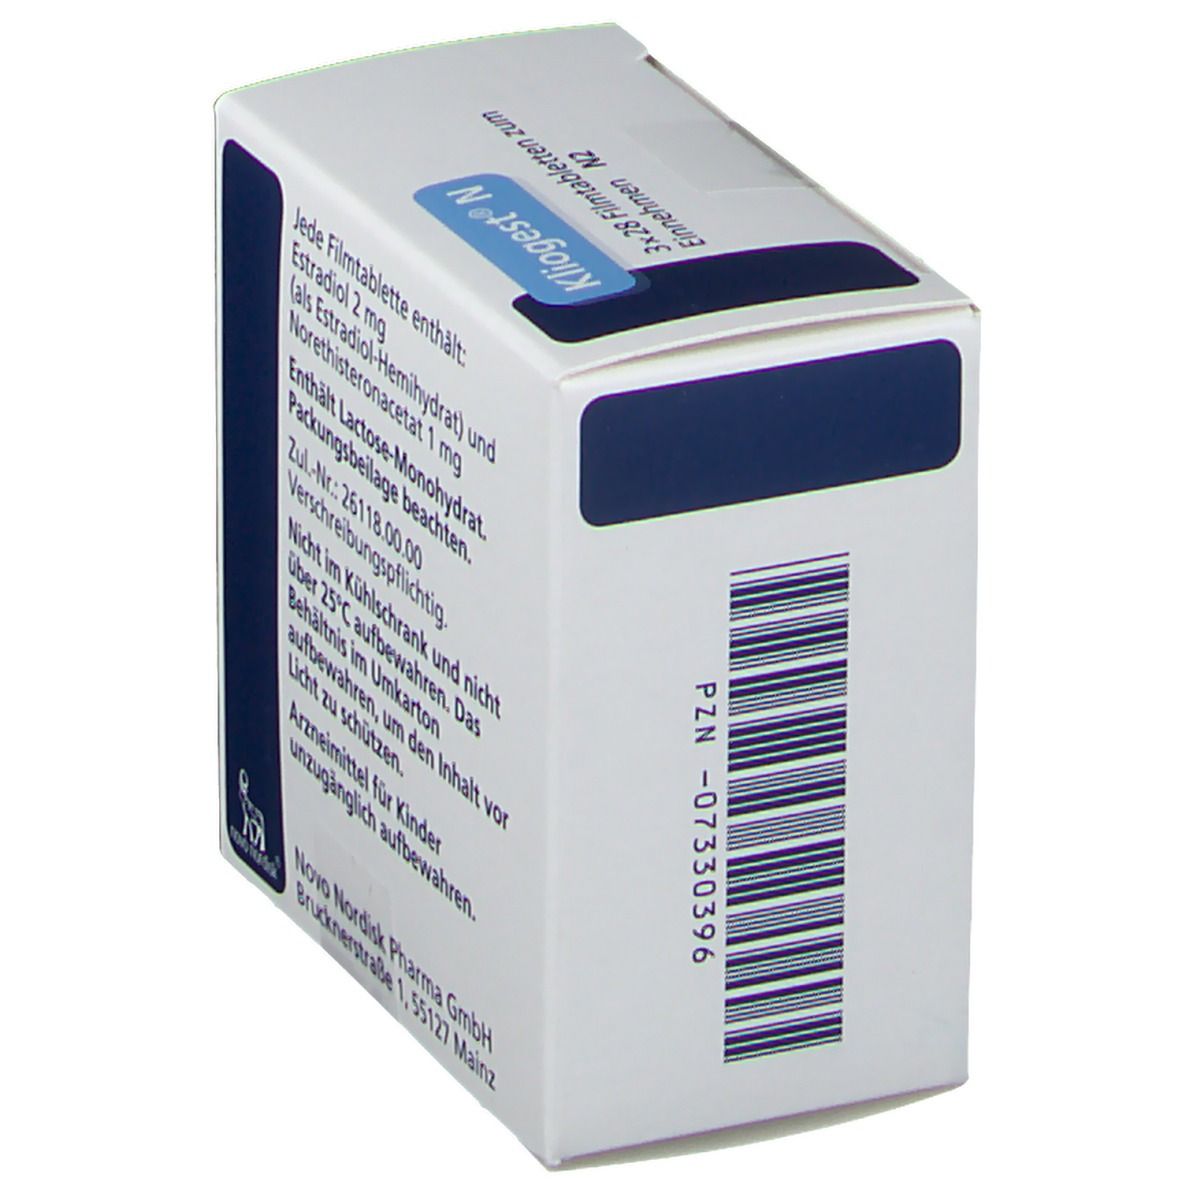 Kliogest® N 2 mg/1 mg